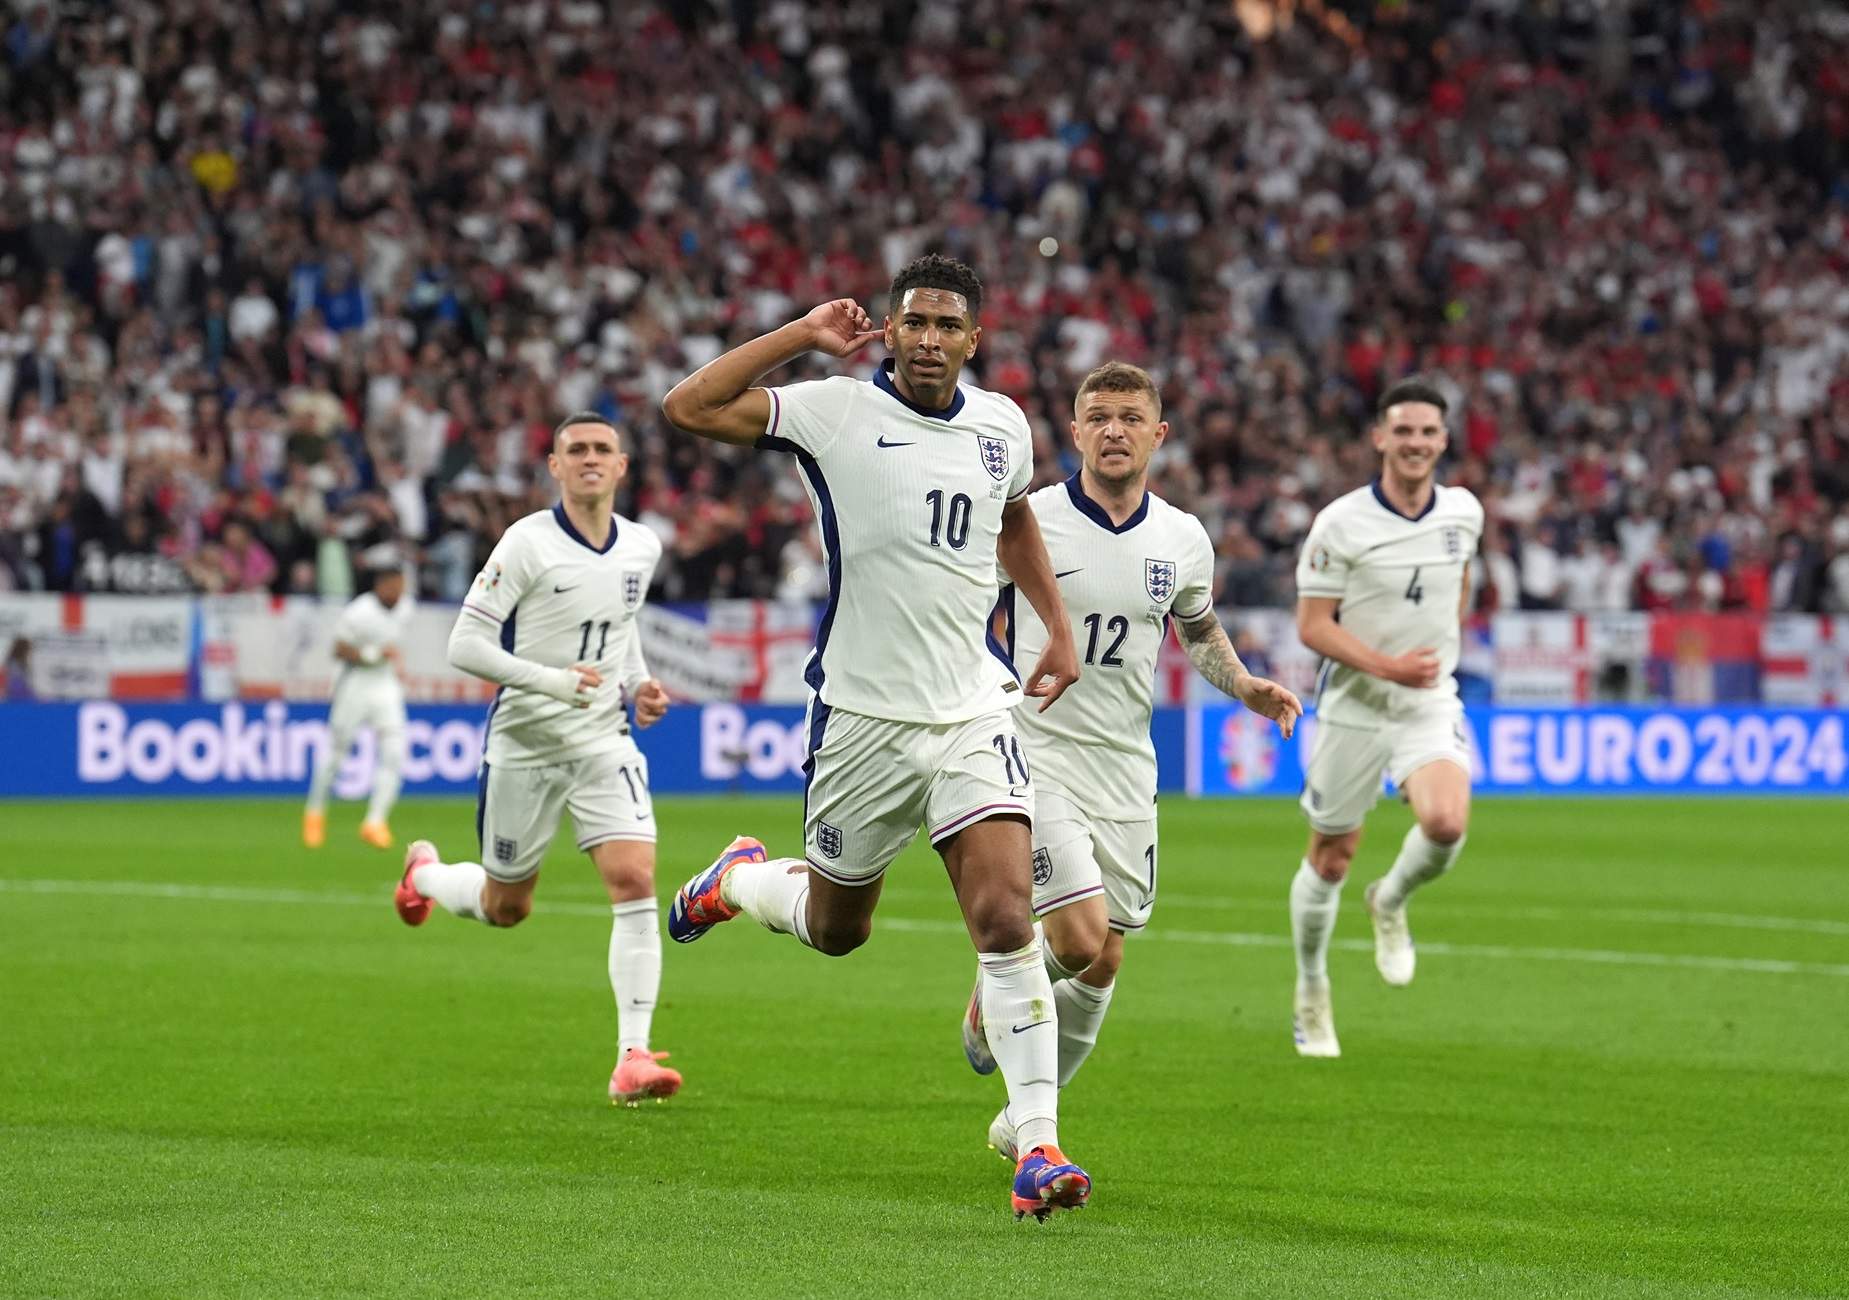 Anglaterra no falla en el seu debut a l'Eurocopa i supera Sèrbia amb un gol de Bellingham (0-1)